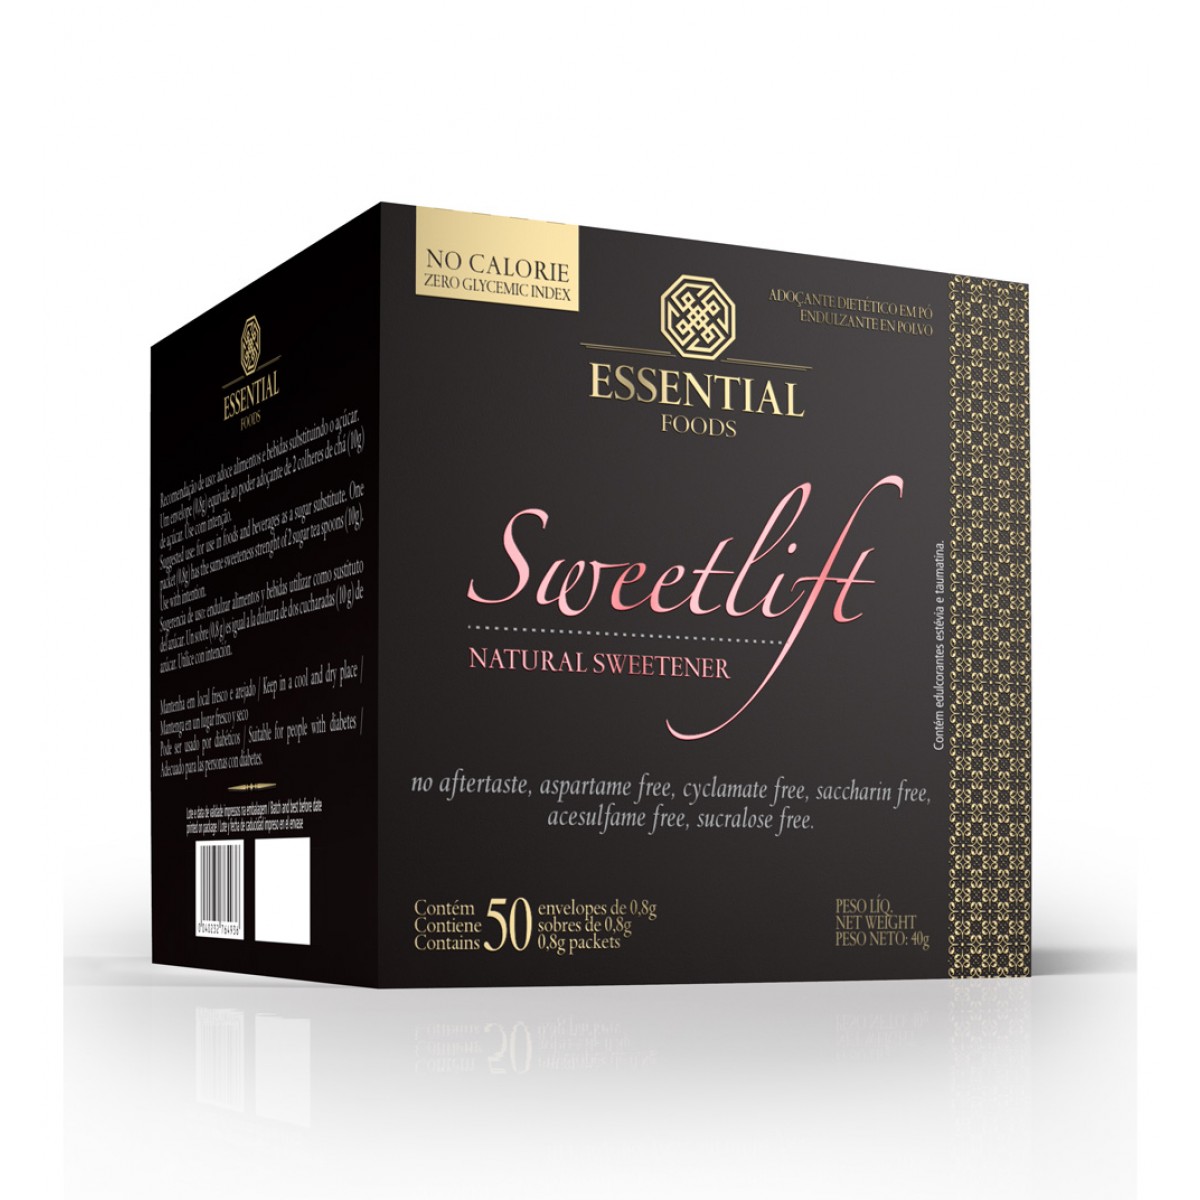 SweetLift-40g-50-envelopes-de-08g-Essential-Nutrition